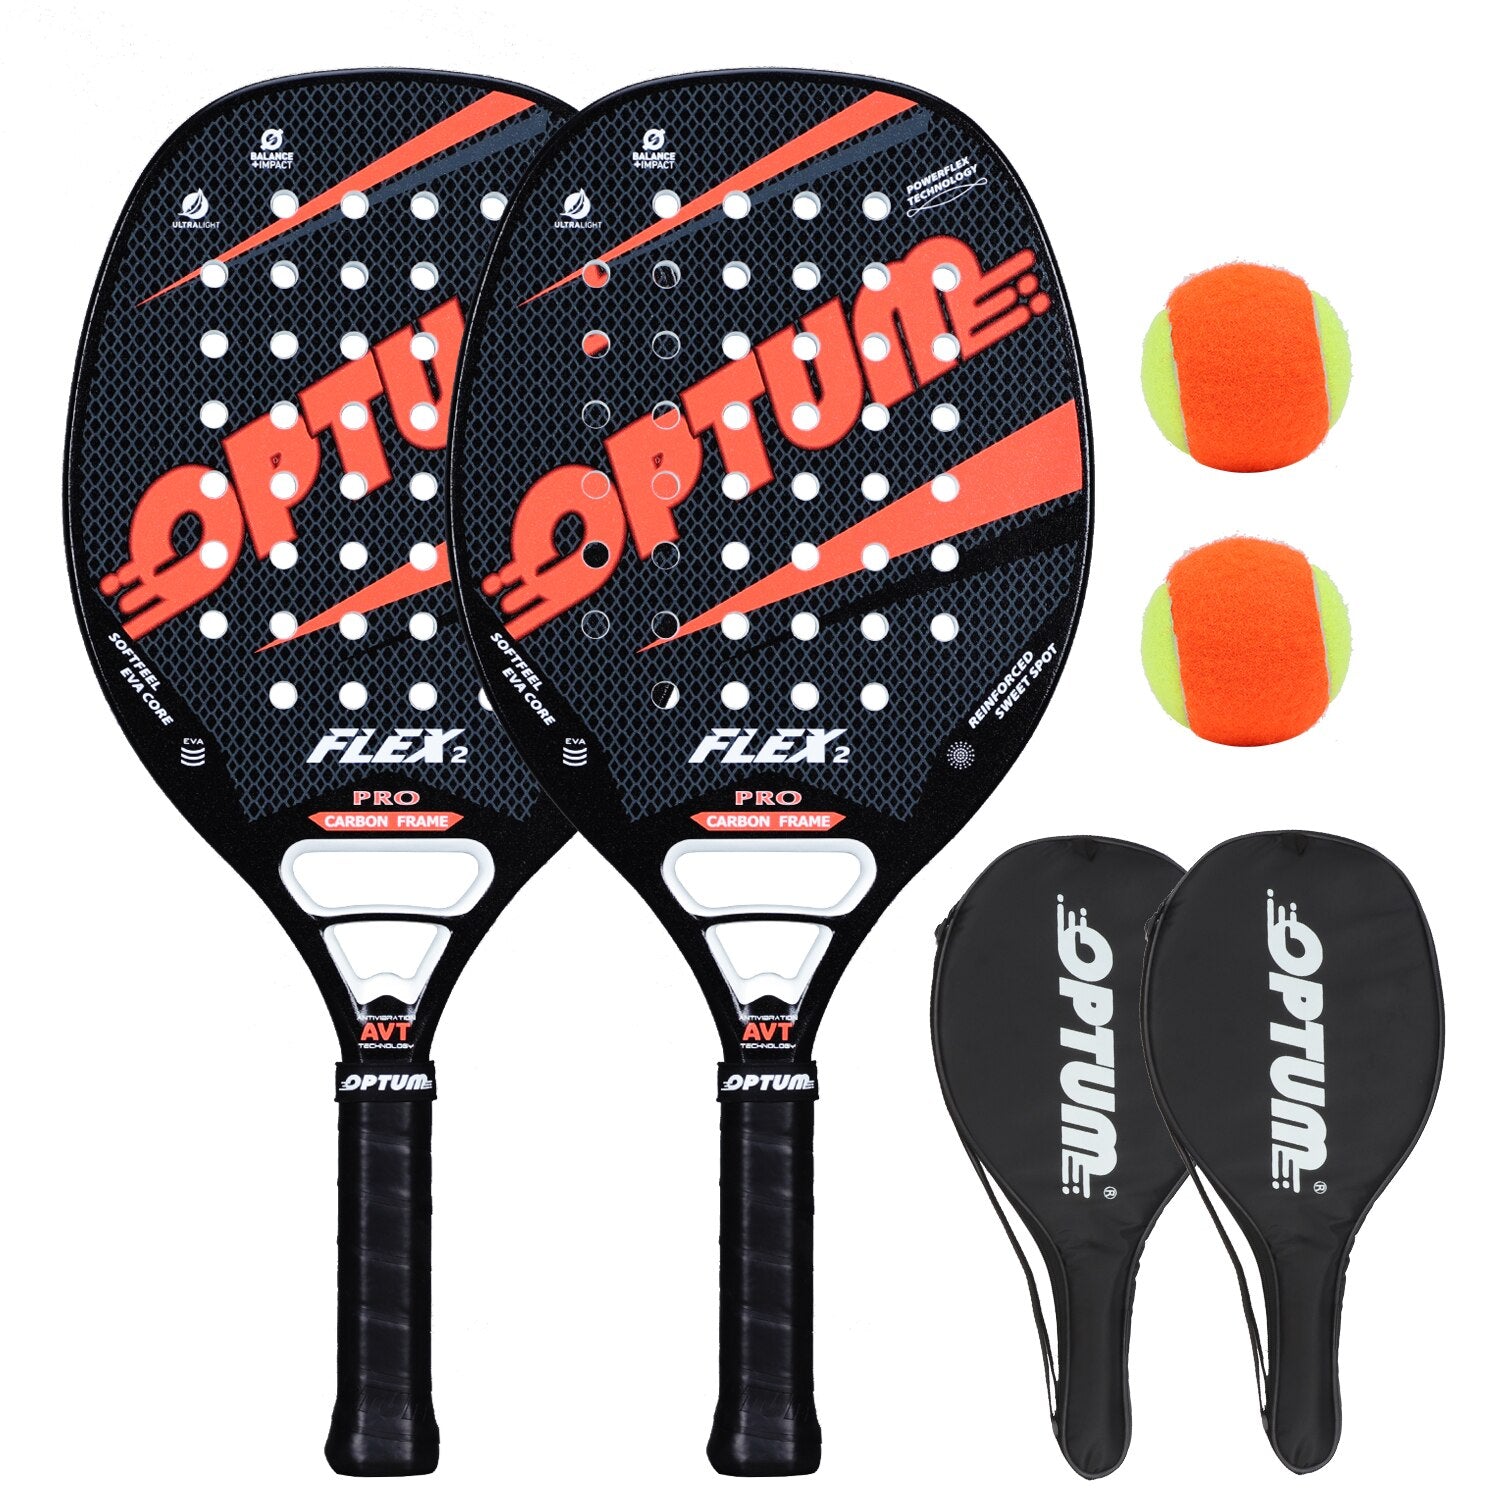 Kit Duas Raquetes de Beach Tennis Optum Flex II Pro Carbon + Bolas 2 Vermelhas